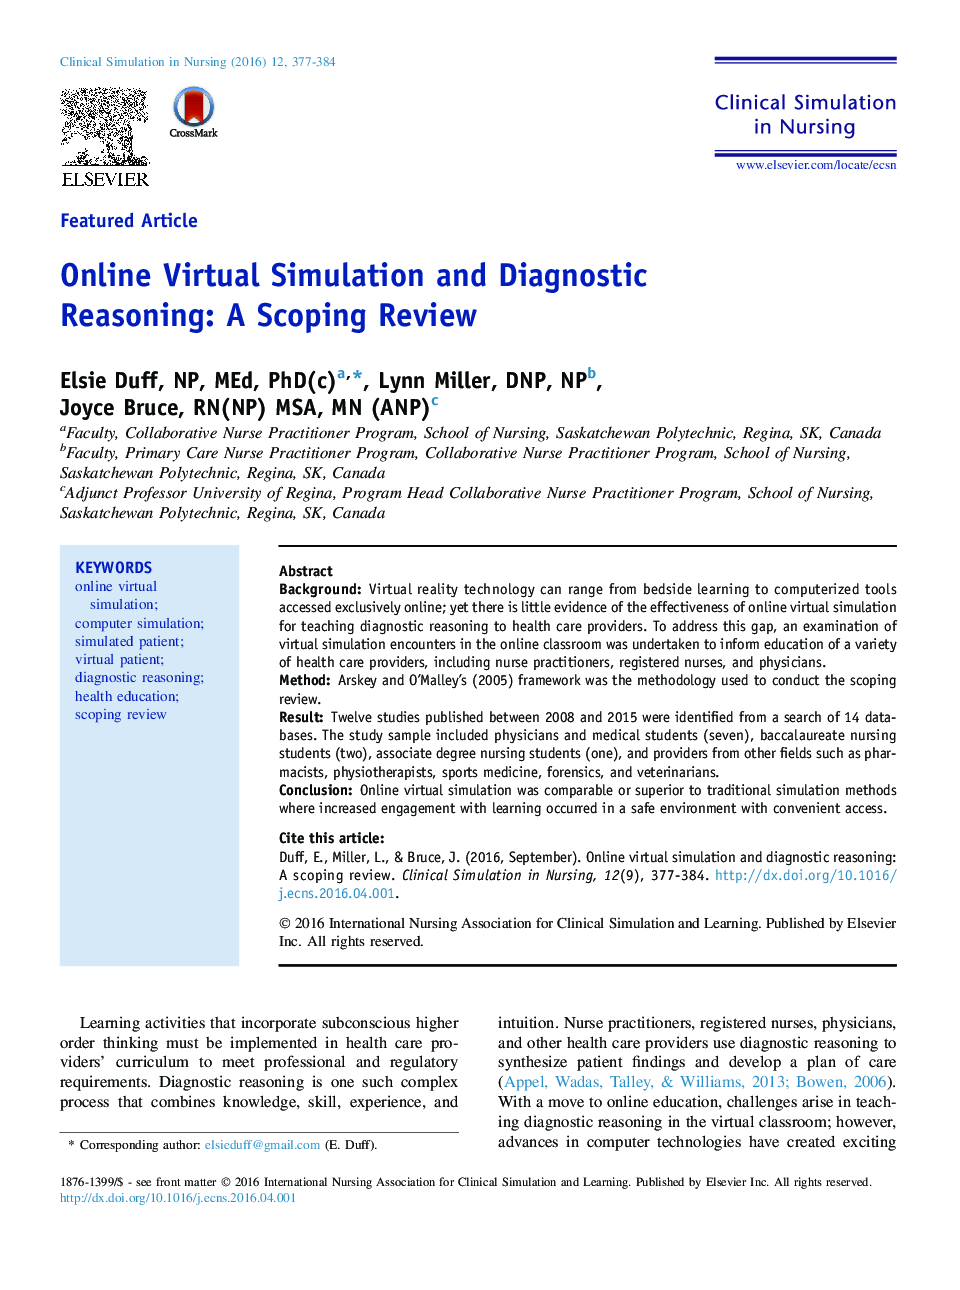 شبیه سازی مجازی آنلاین و استدلال تشخیصی: حوزه نقد و بررسی